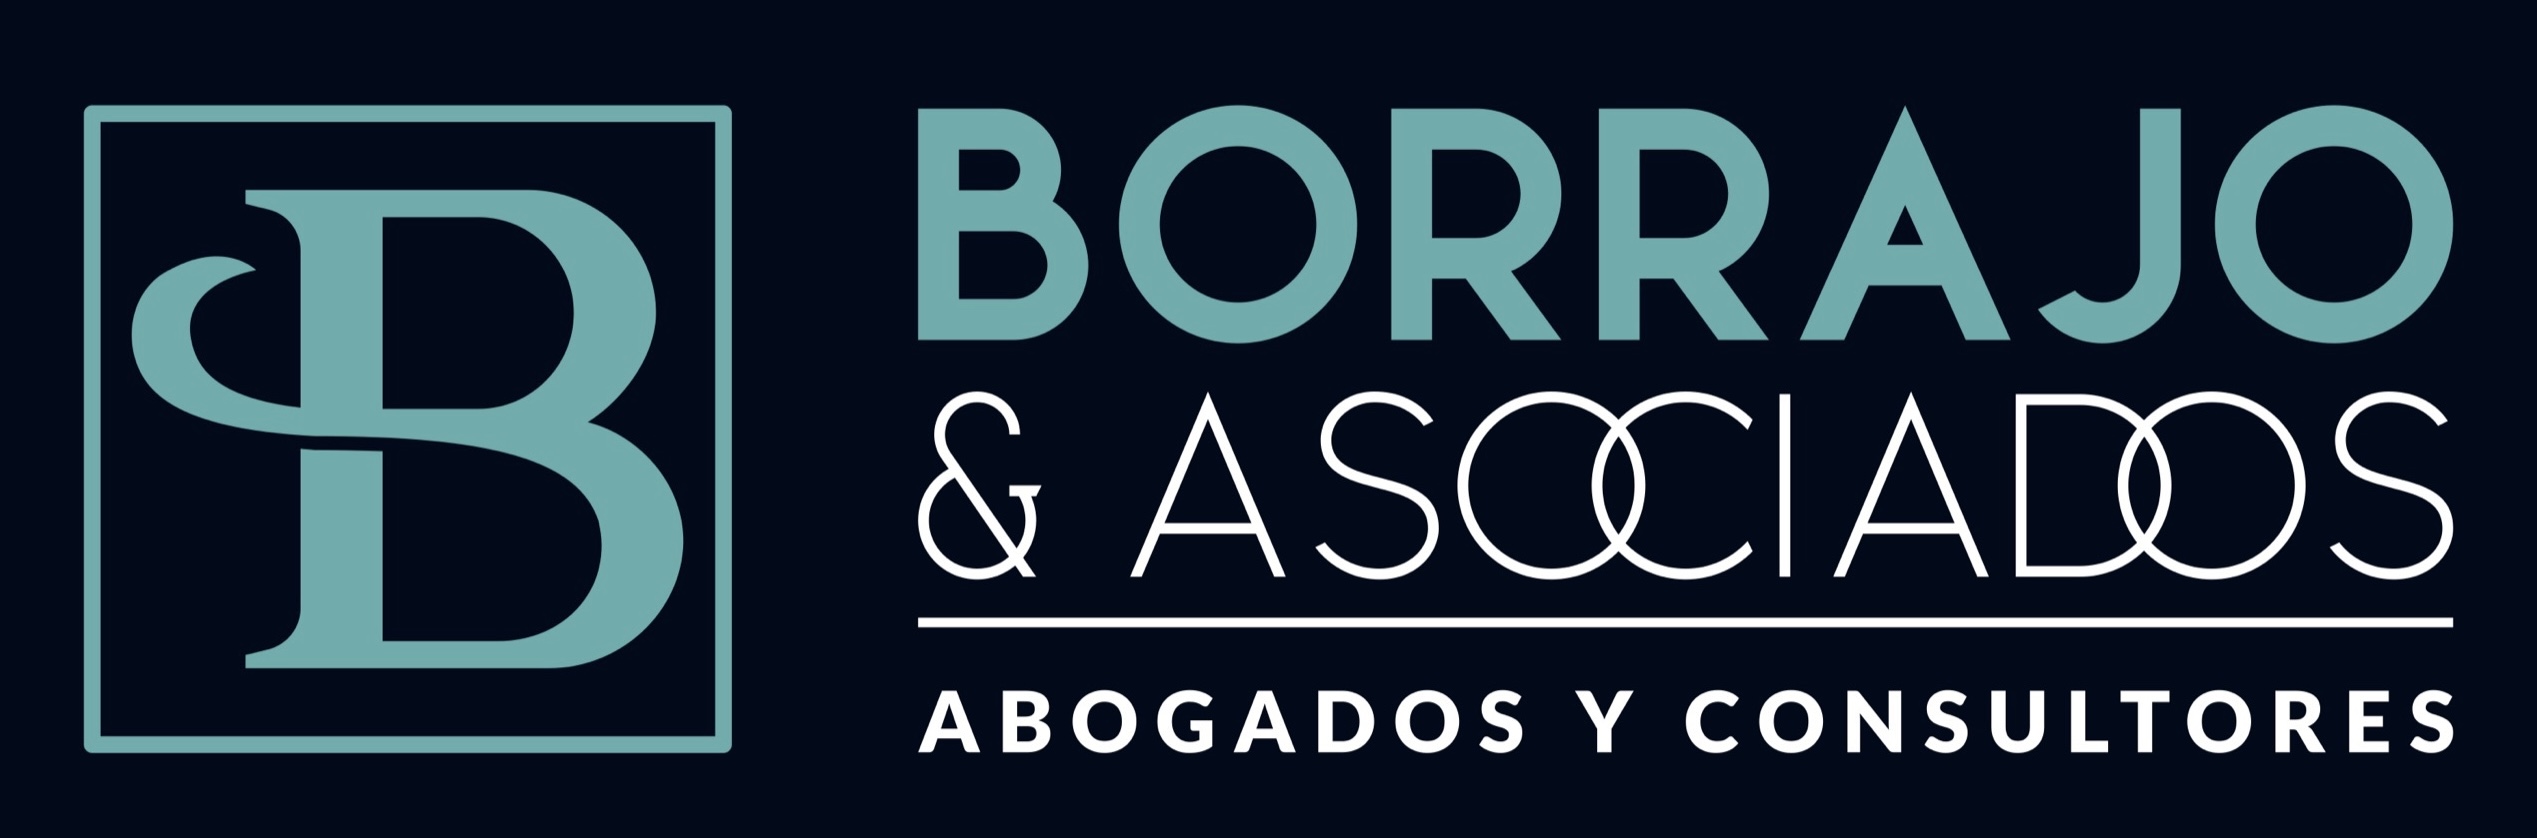 BORRAJO & ASOCIADOS